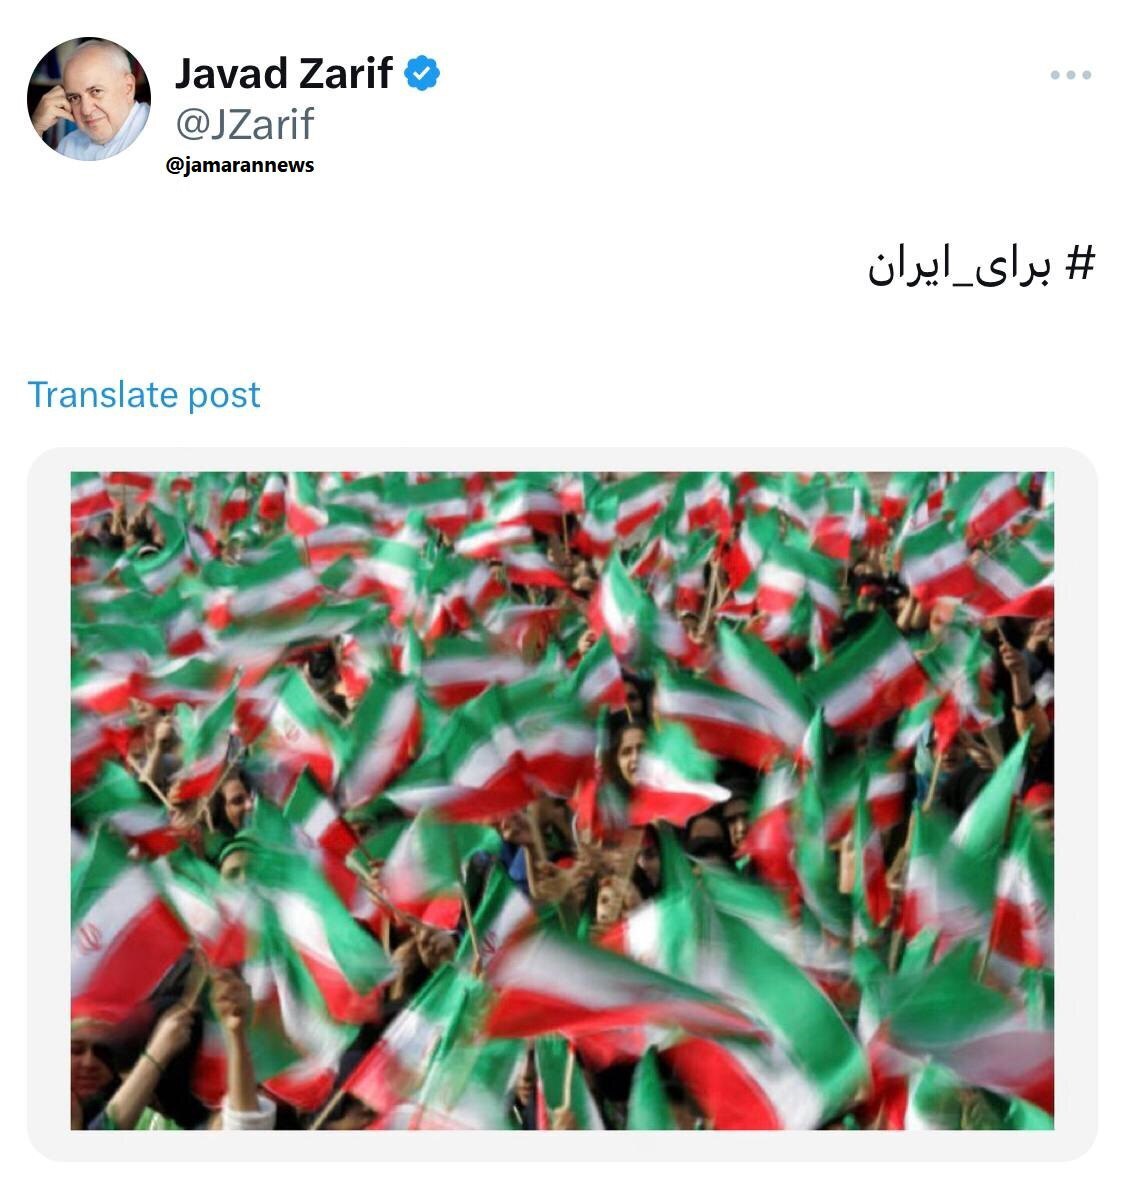 توییت معنادار ظریف برای پزشکیان ؛ حمایت رسمی انجام شد | تصویر و شعاری که ظریف درباره انتخابات منتشر کرد